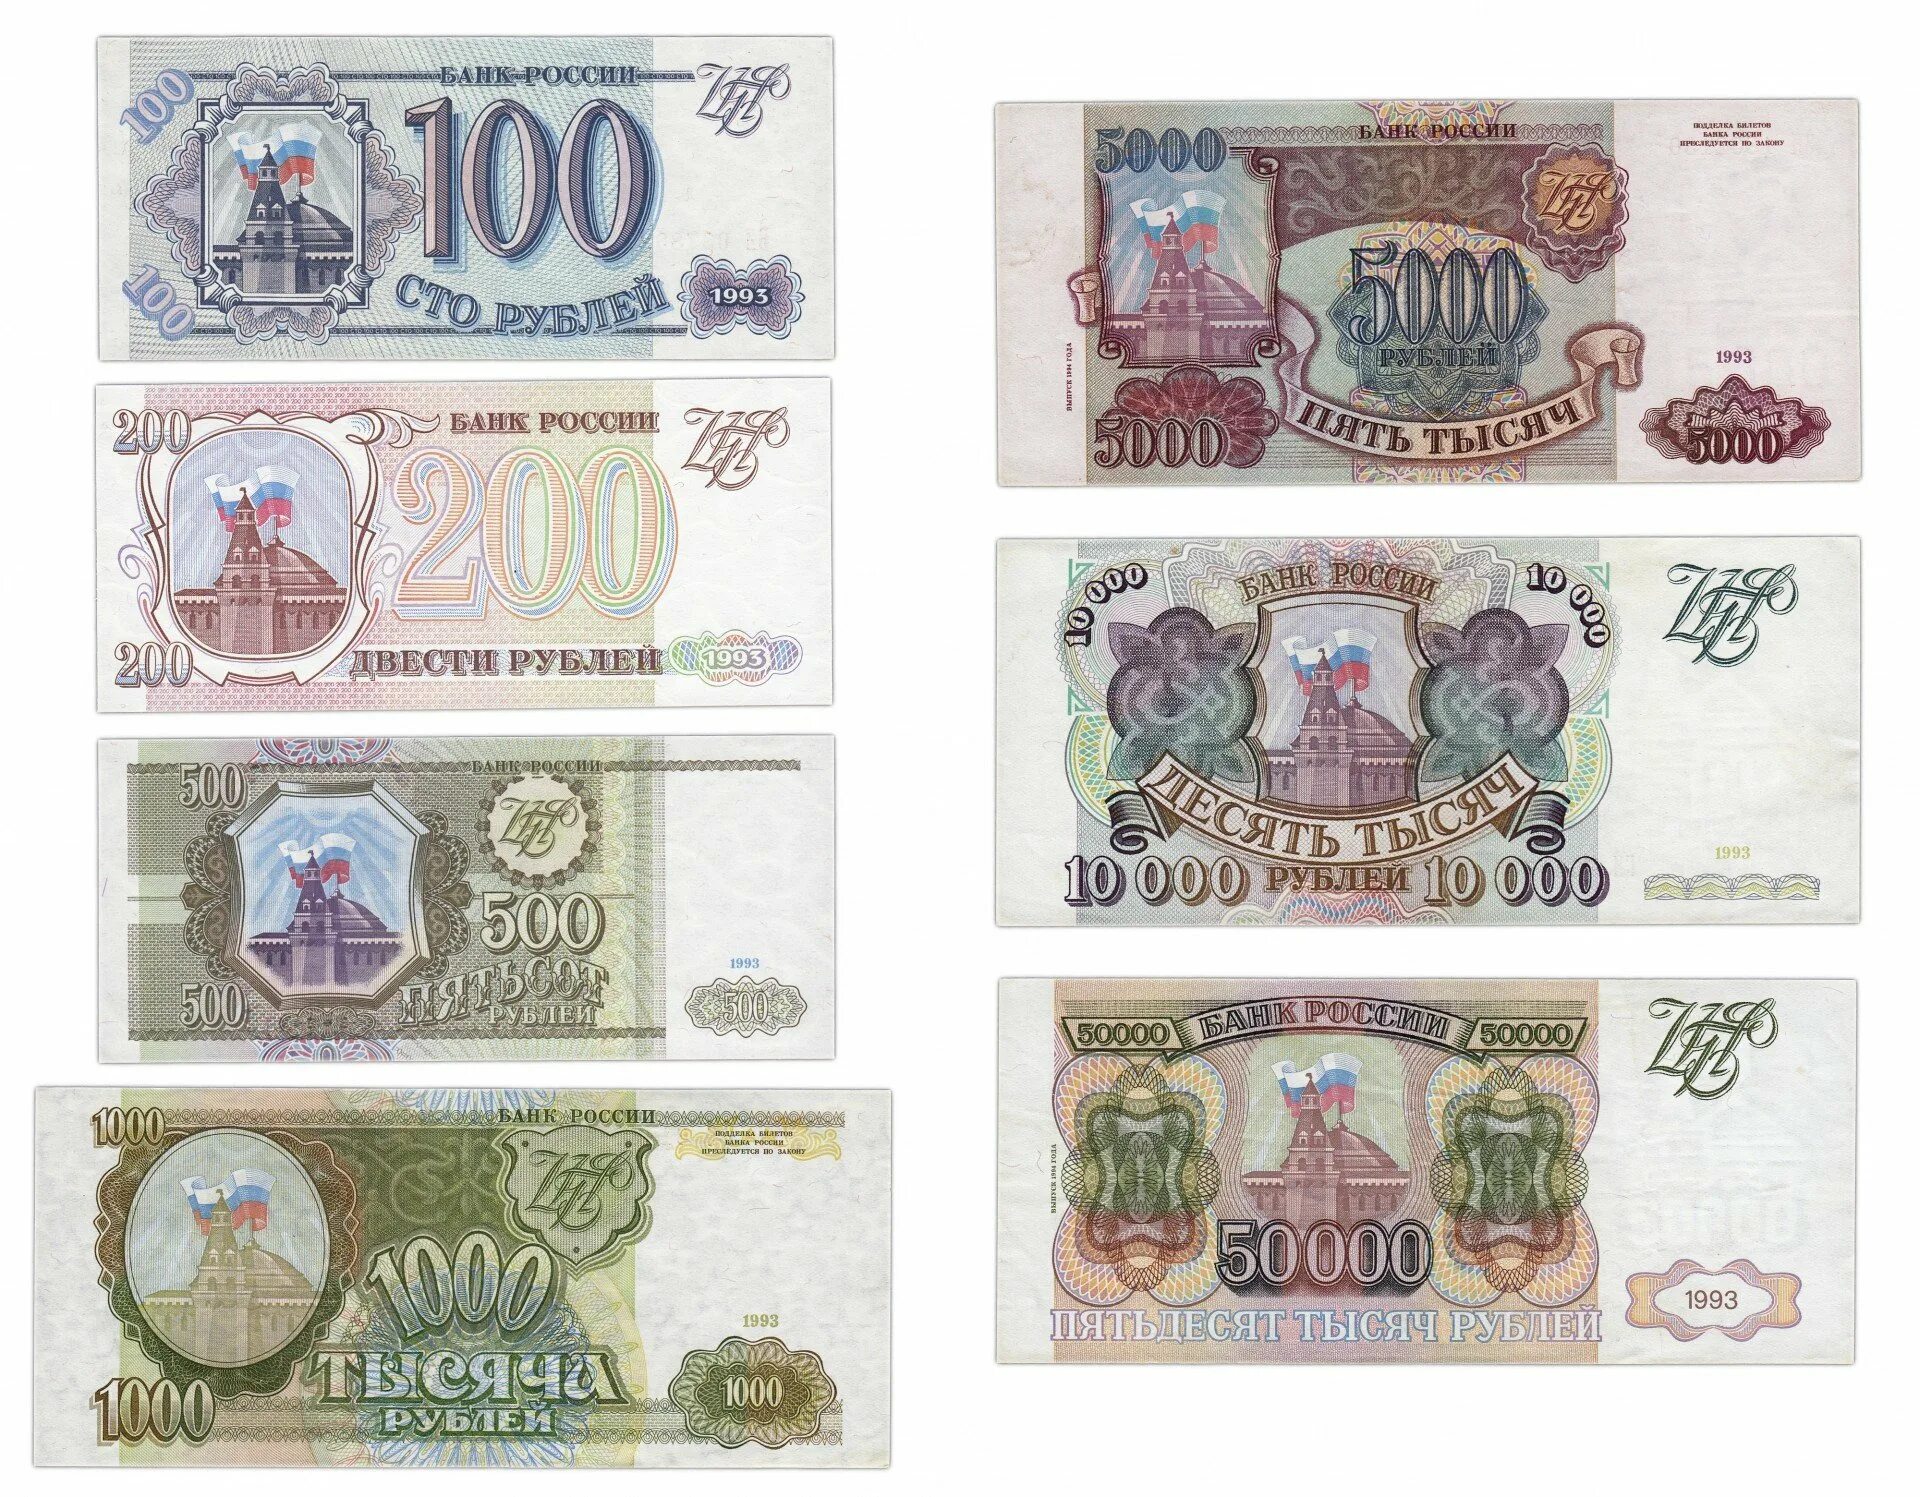 Купюры 100, 200, 500 рублей 1993 года. Бумажные купюры 1993 года. Банкноты образца 1993 года. Деньги в 1993 году в России.